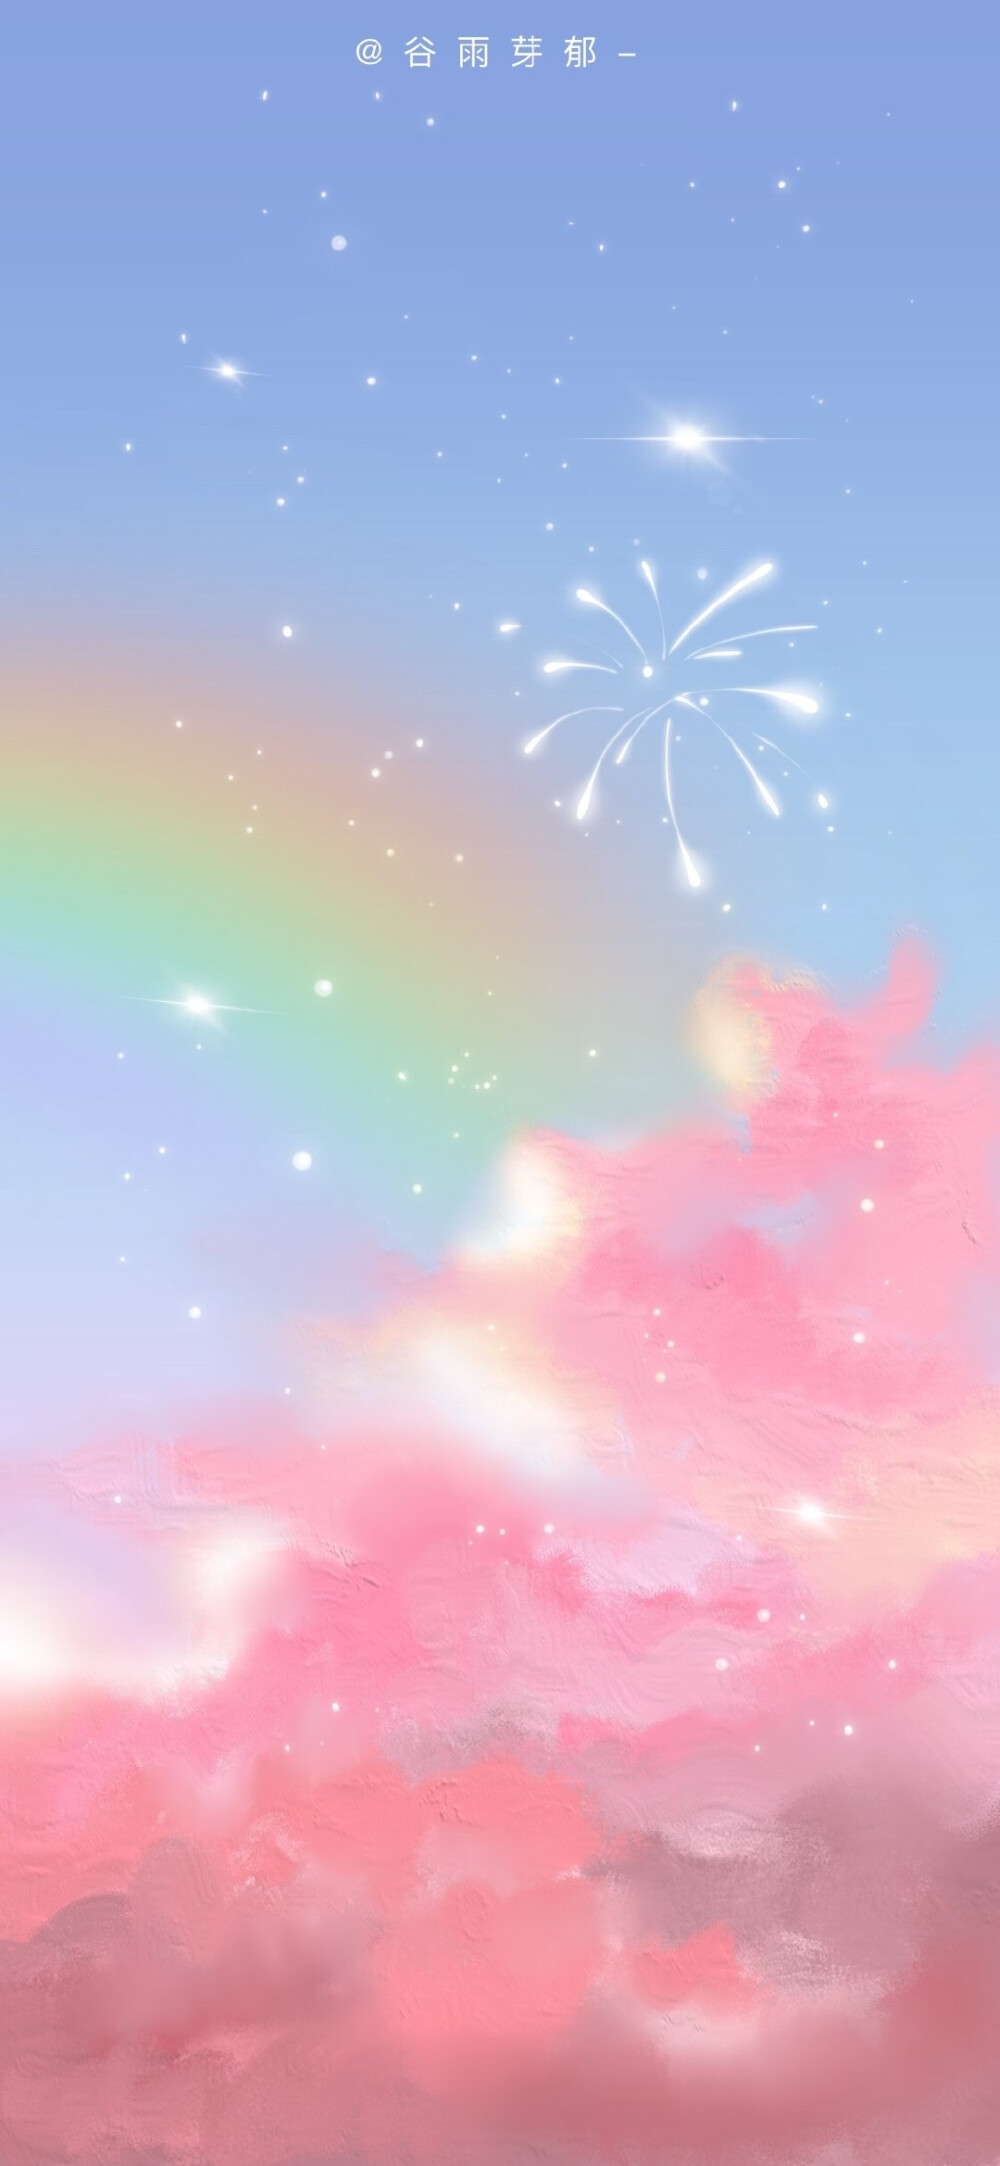 粉粉嫩嫩的天空你们喜欢吗 画师:谷雨芽郁